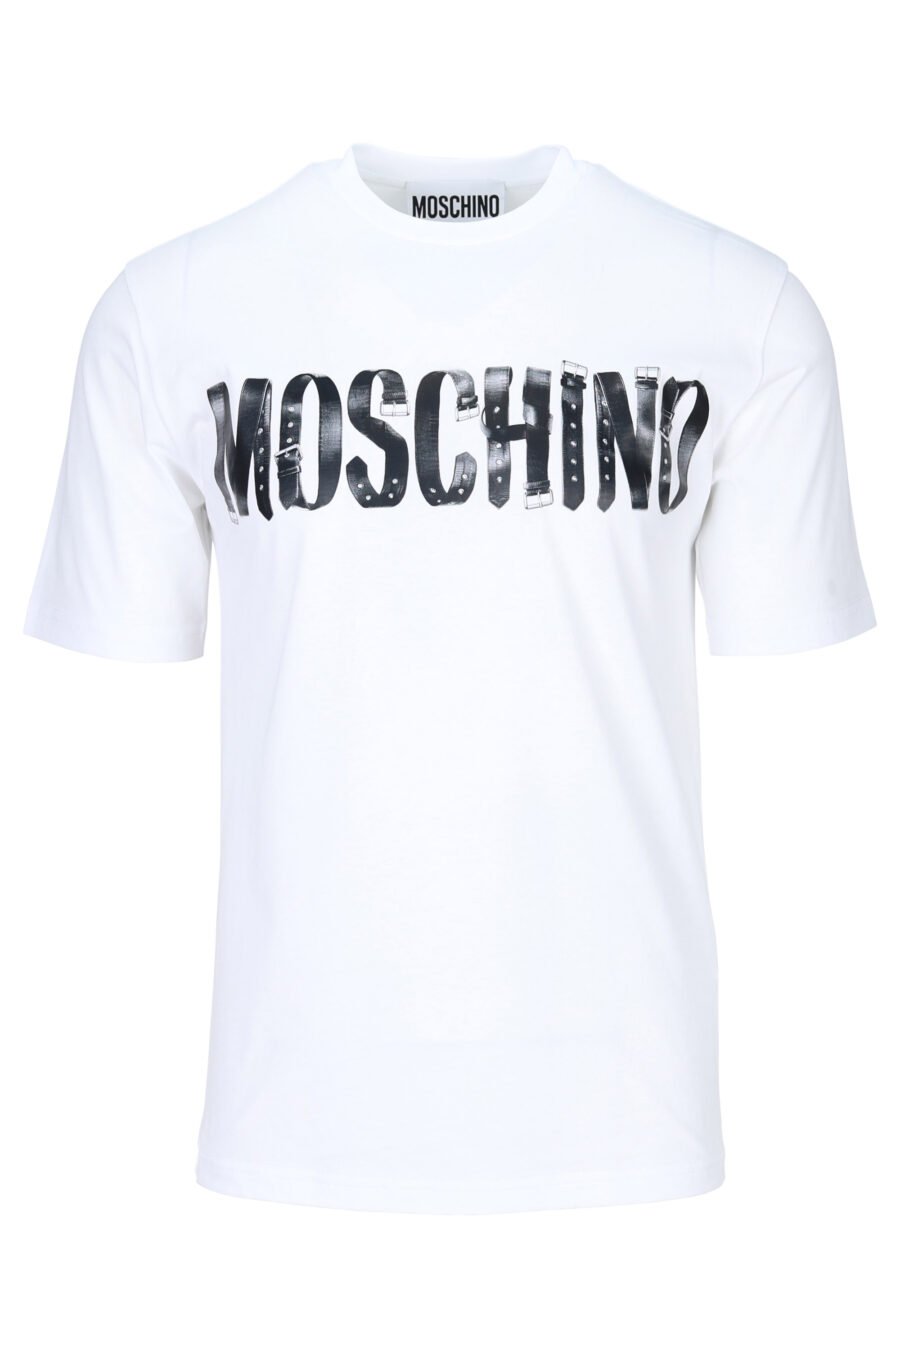 Weißes T-Shirt mit schwarzem getragenen Maxilogue - 889316937954